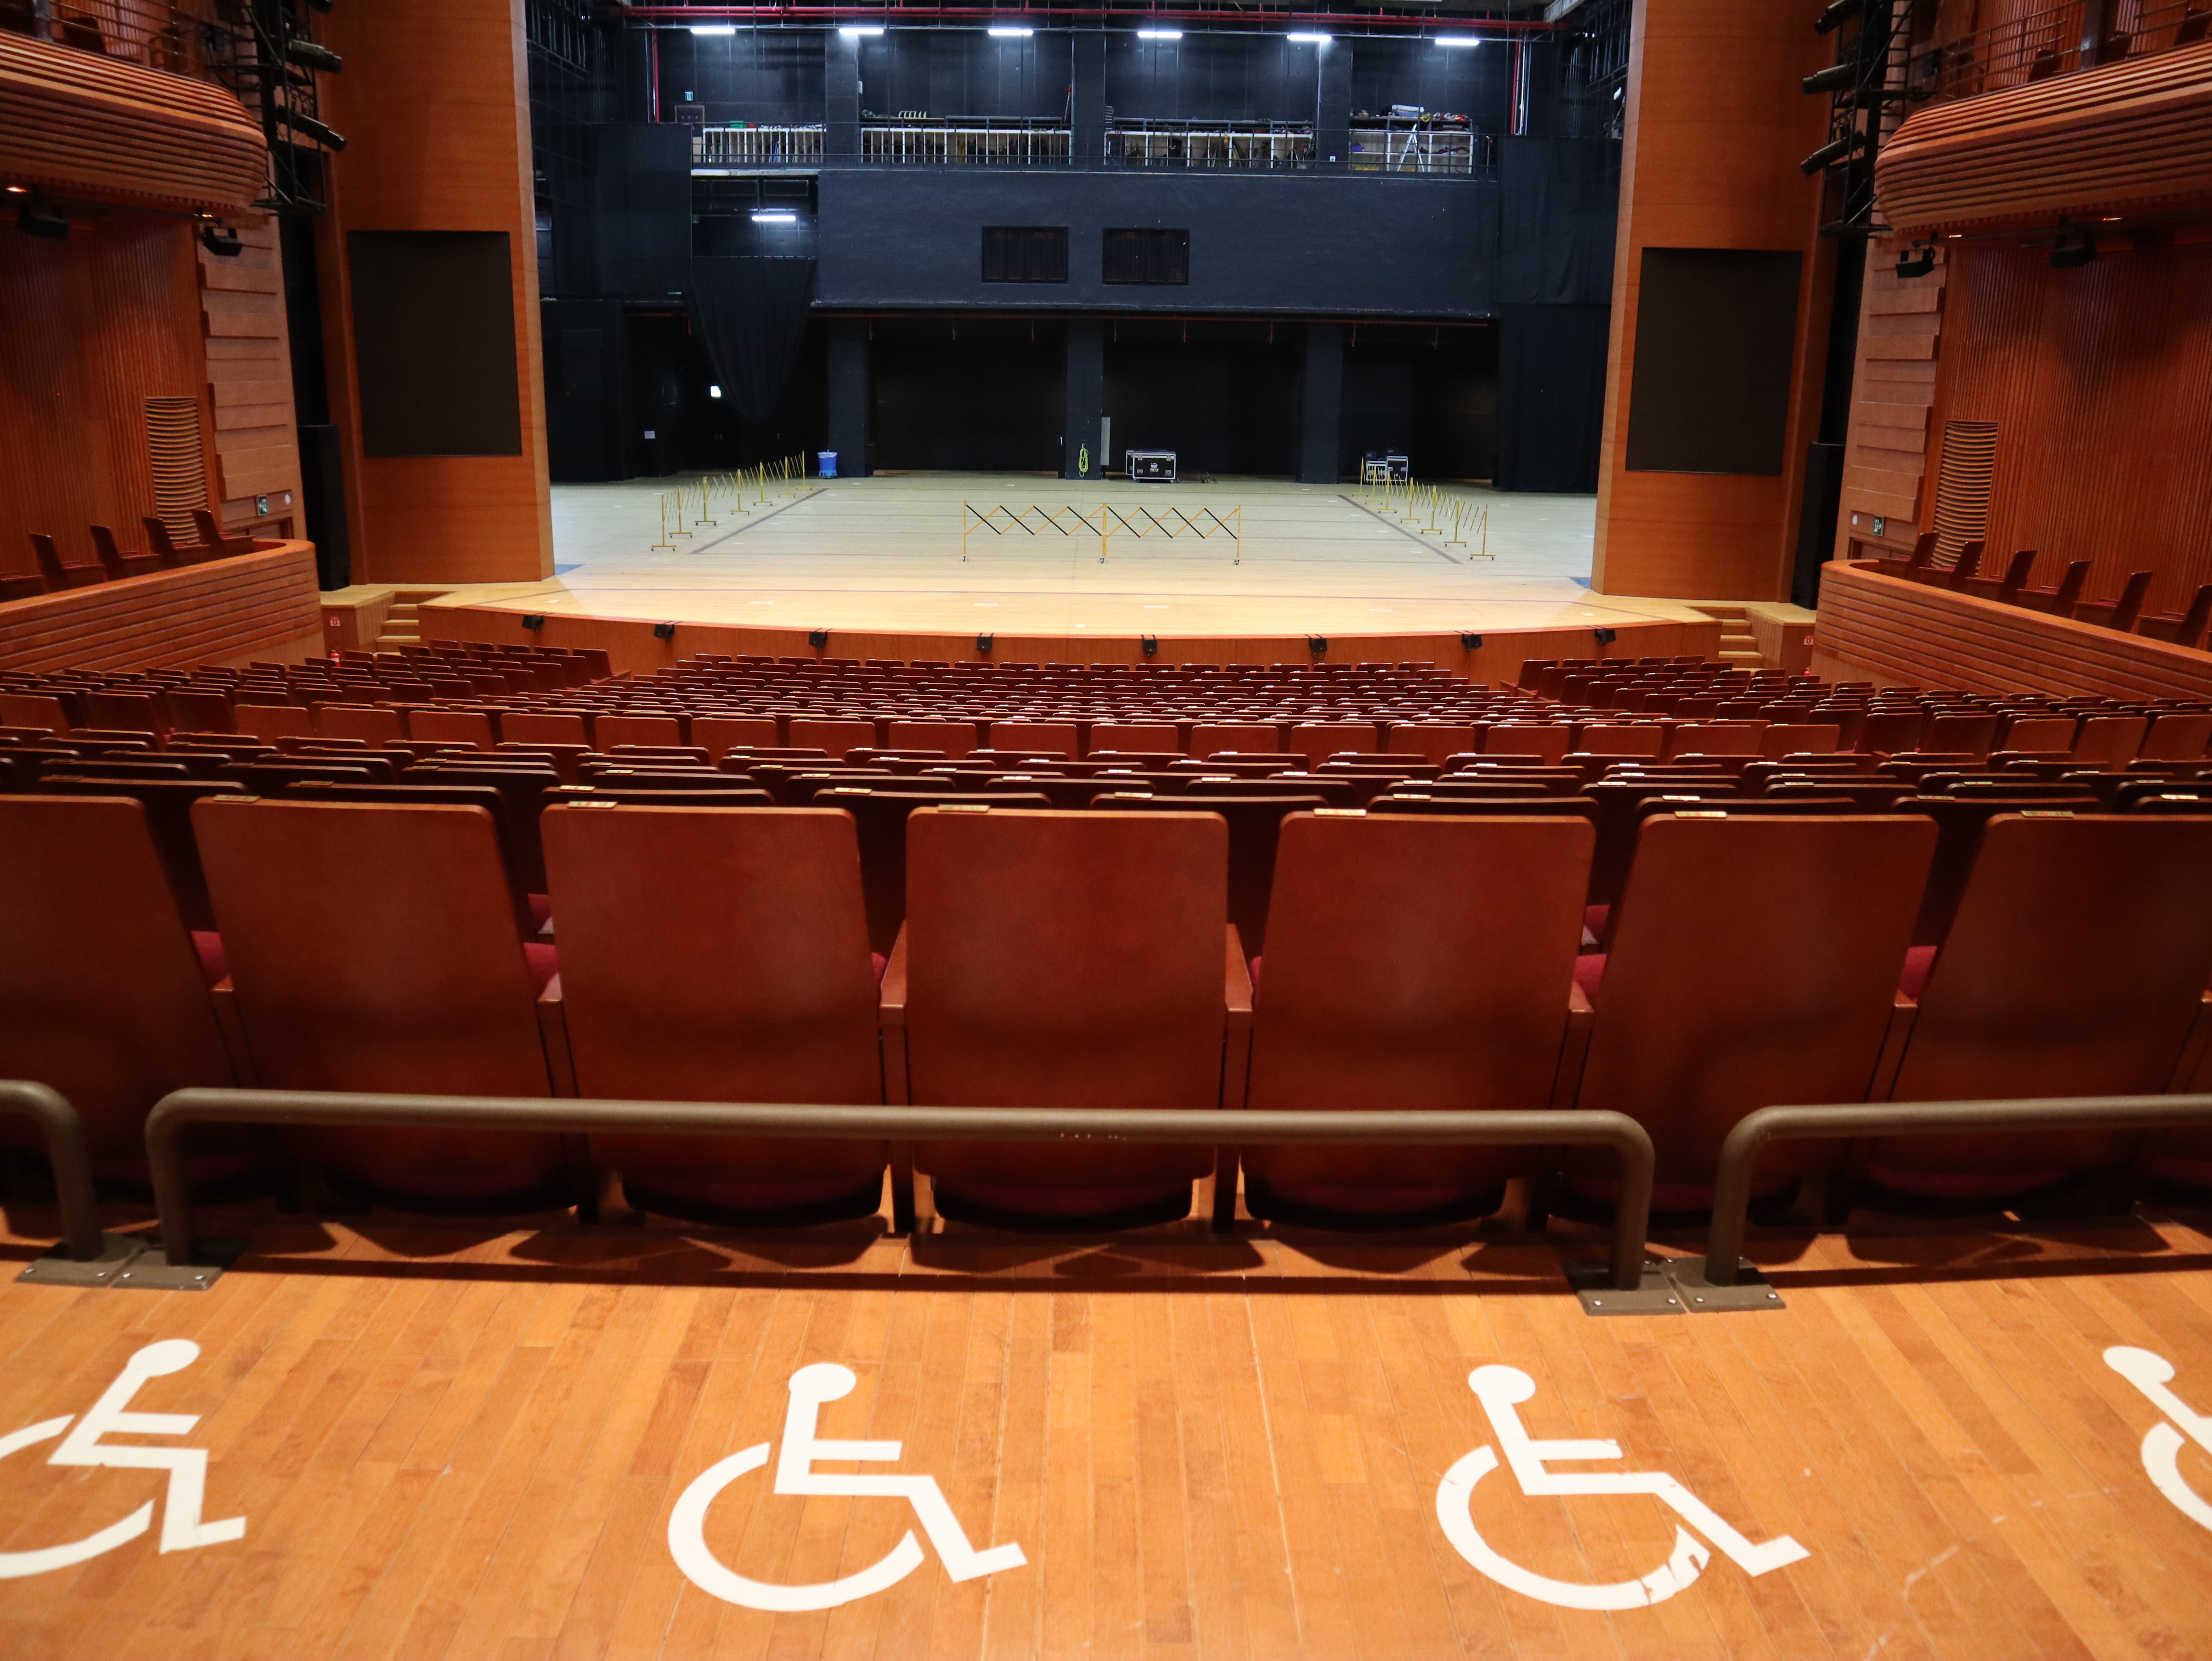 해오름극장 장애인 객석0 : 바닥에 휠체어 픽토그램이 그려진 공연장 휠체어석